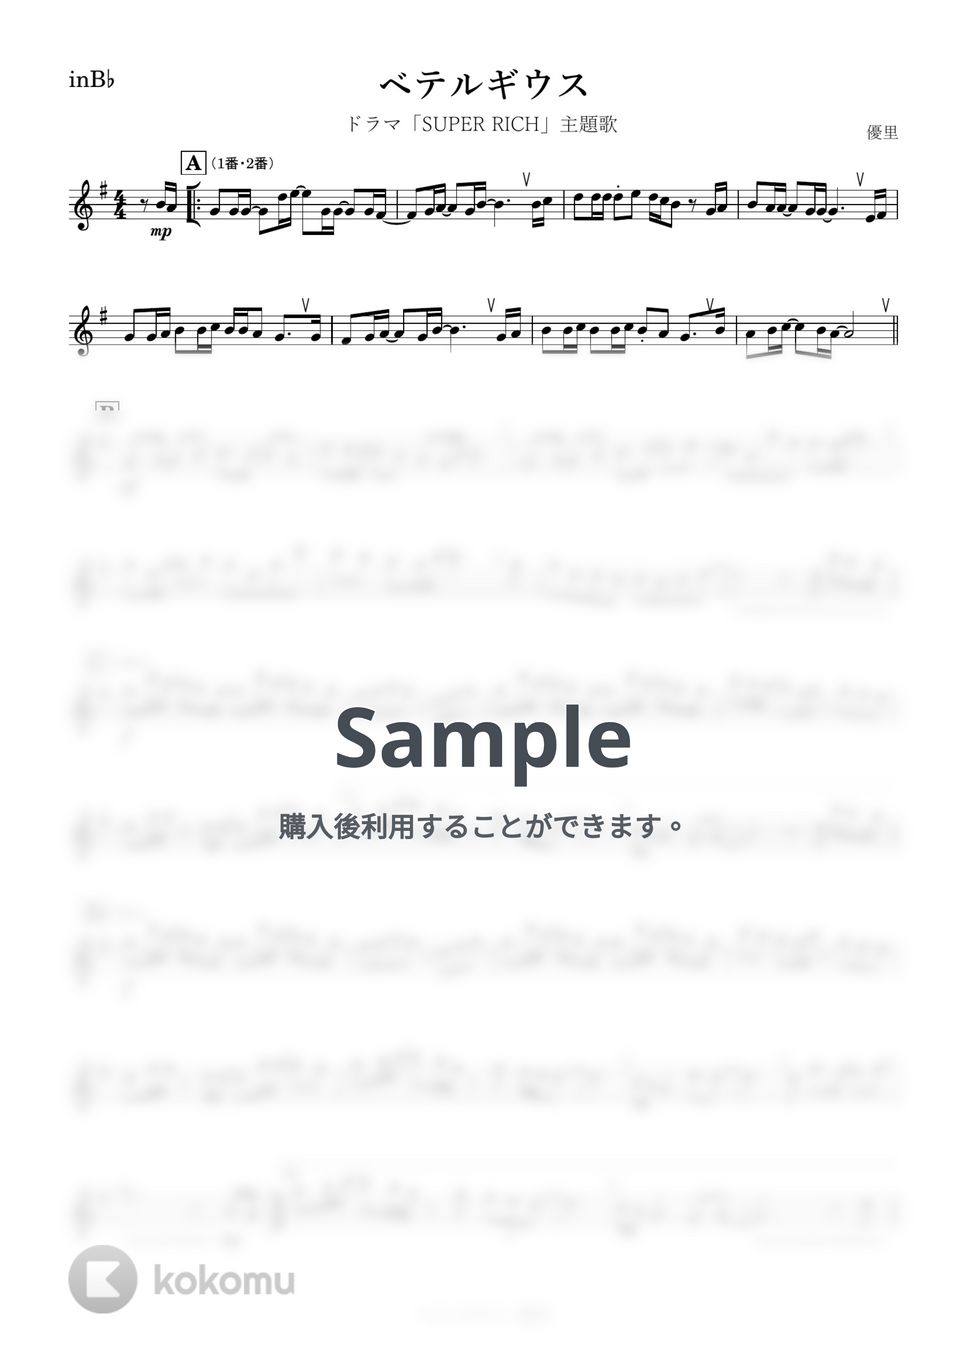 優里 - ベテルギウス (B♭) by kanamusic